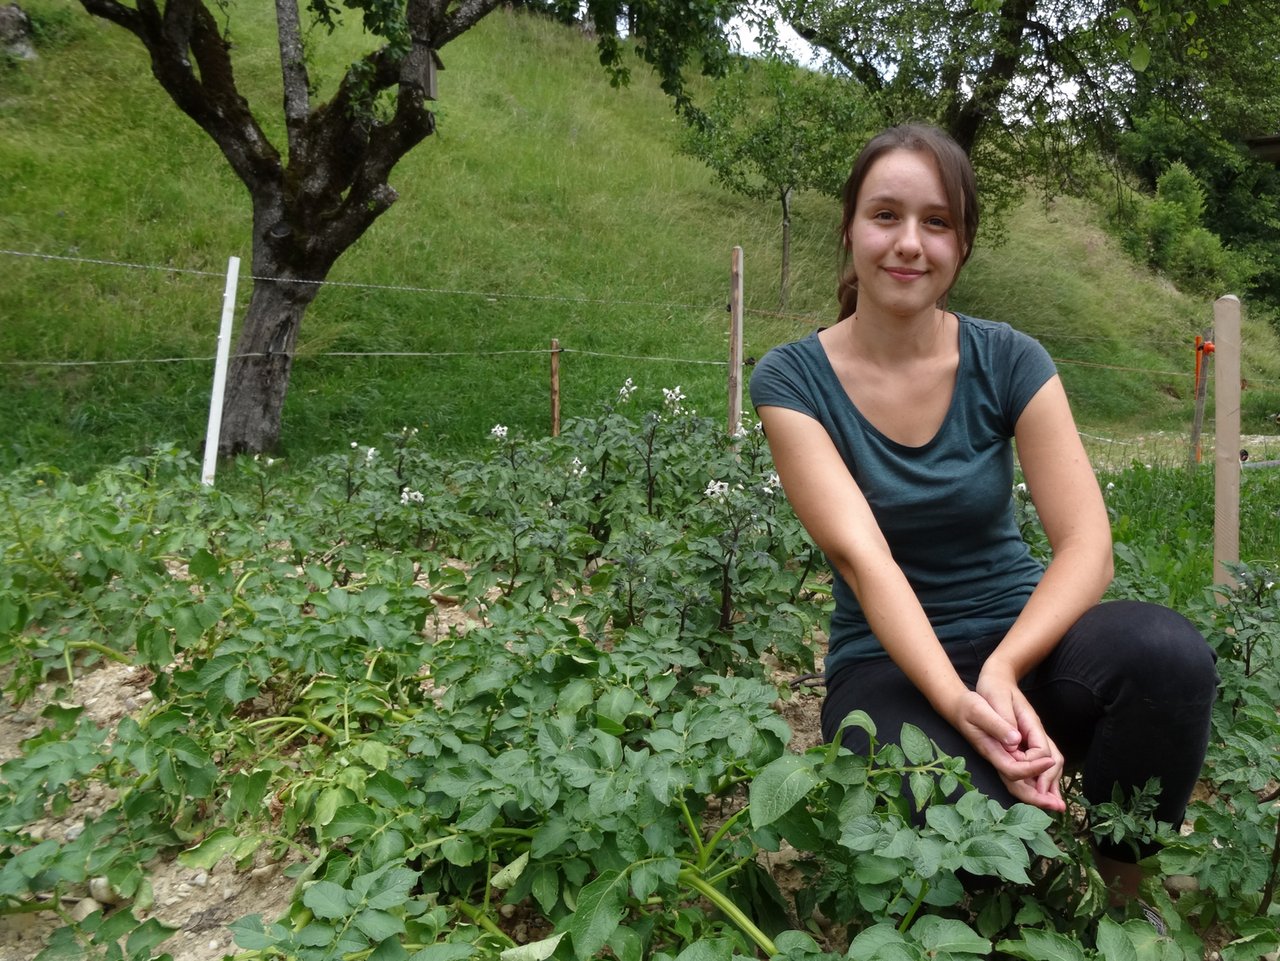 Tamara Widmer pflanzt im elterlichen Garten unter anderem blaue St Galler Kartoffeln und Süsskartoffeln an. (Bilder lid/mg)